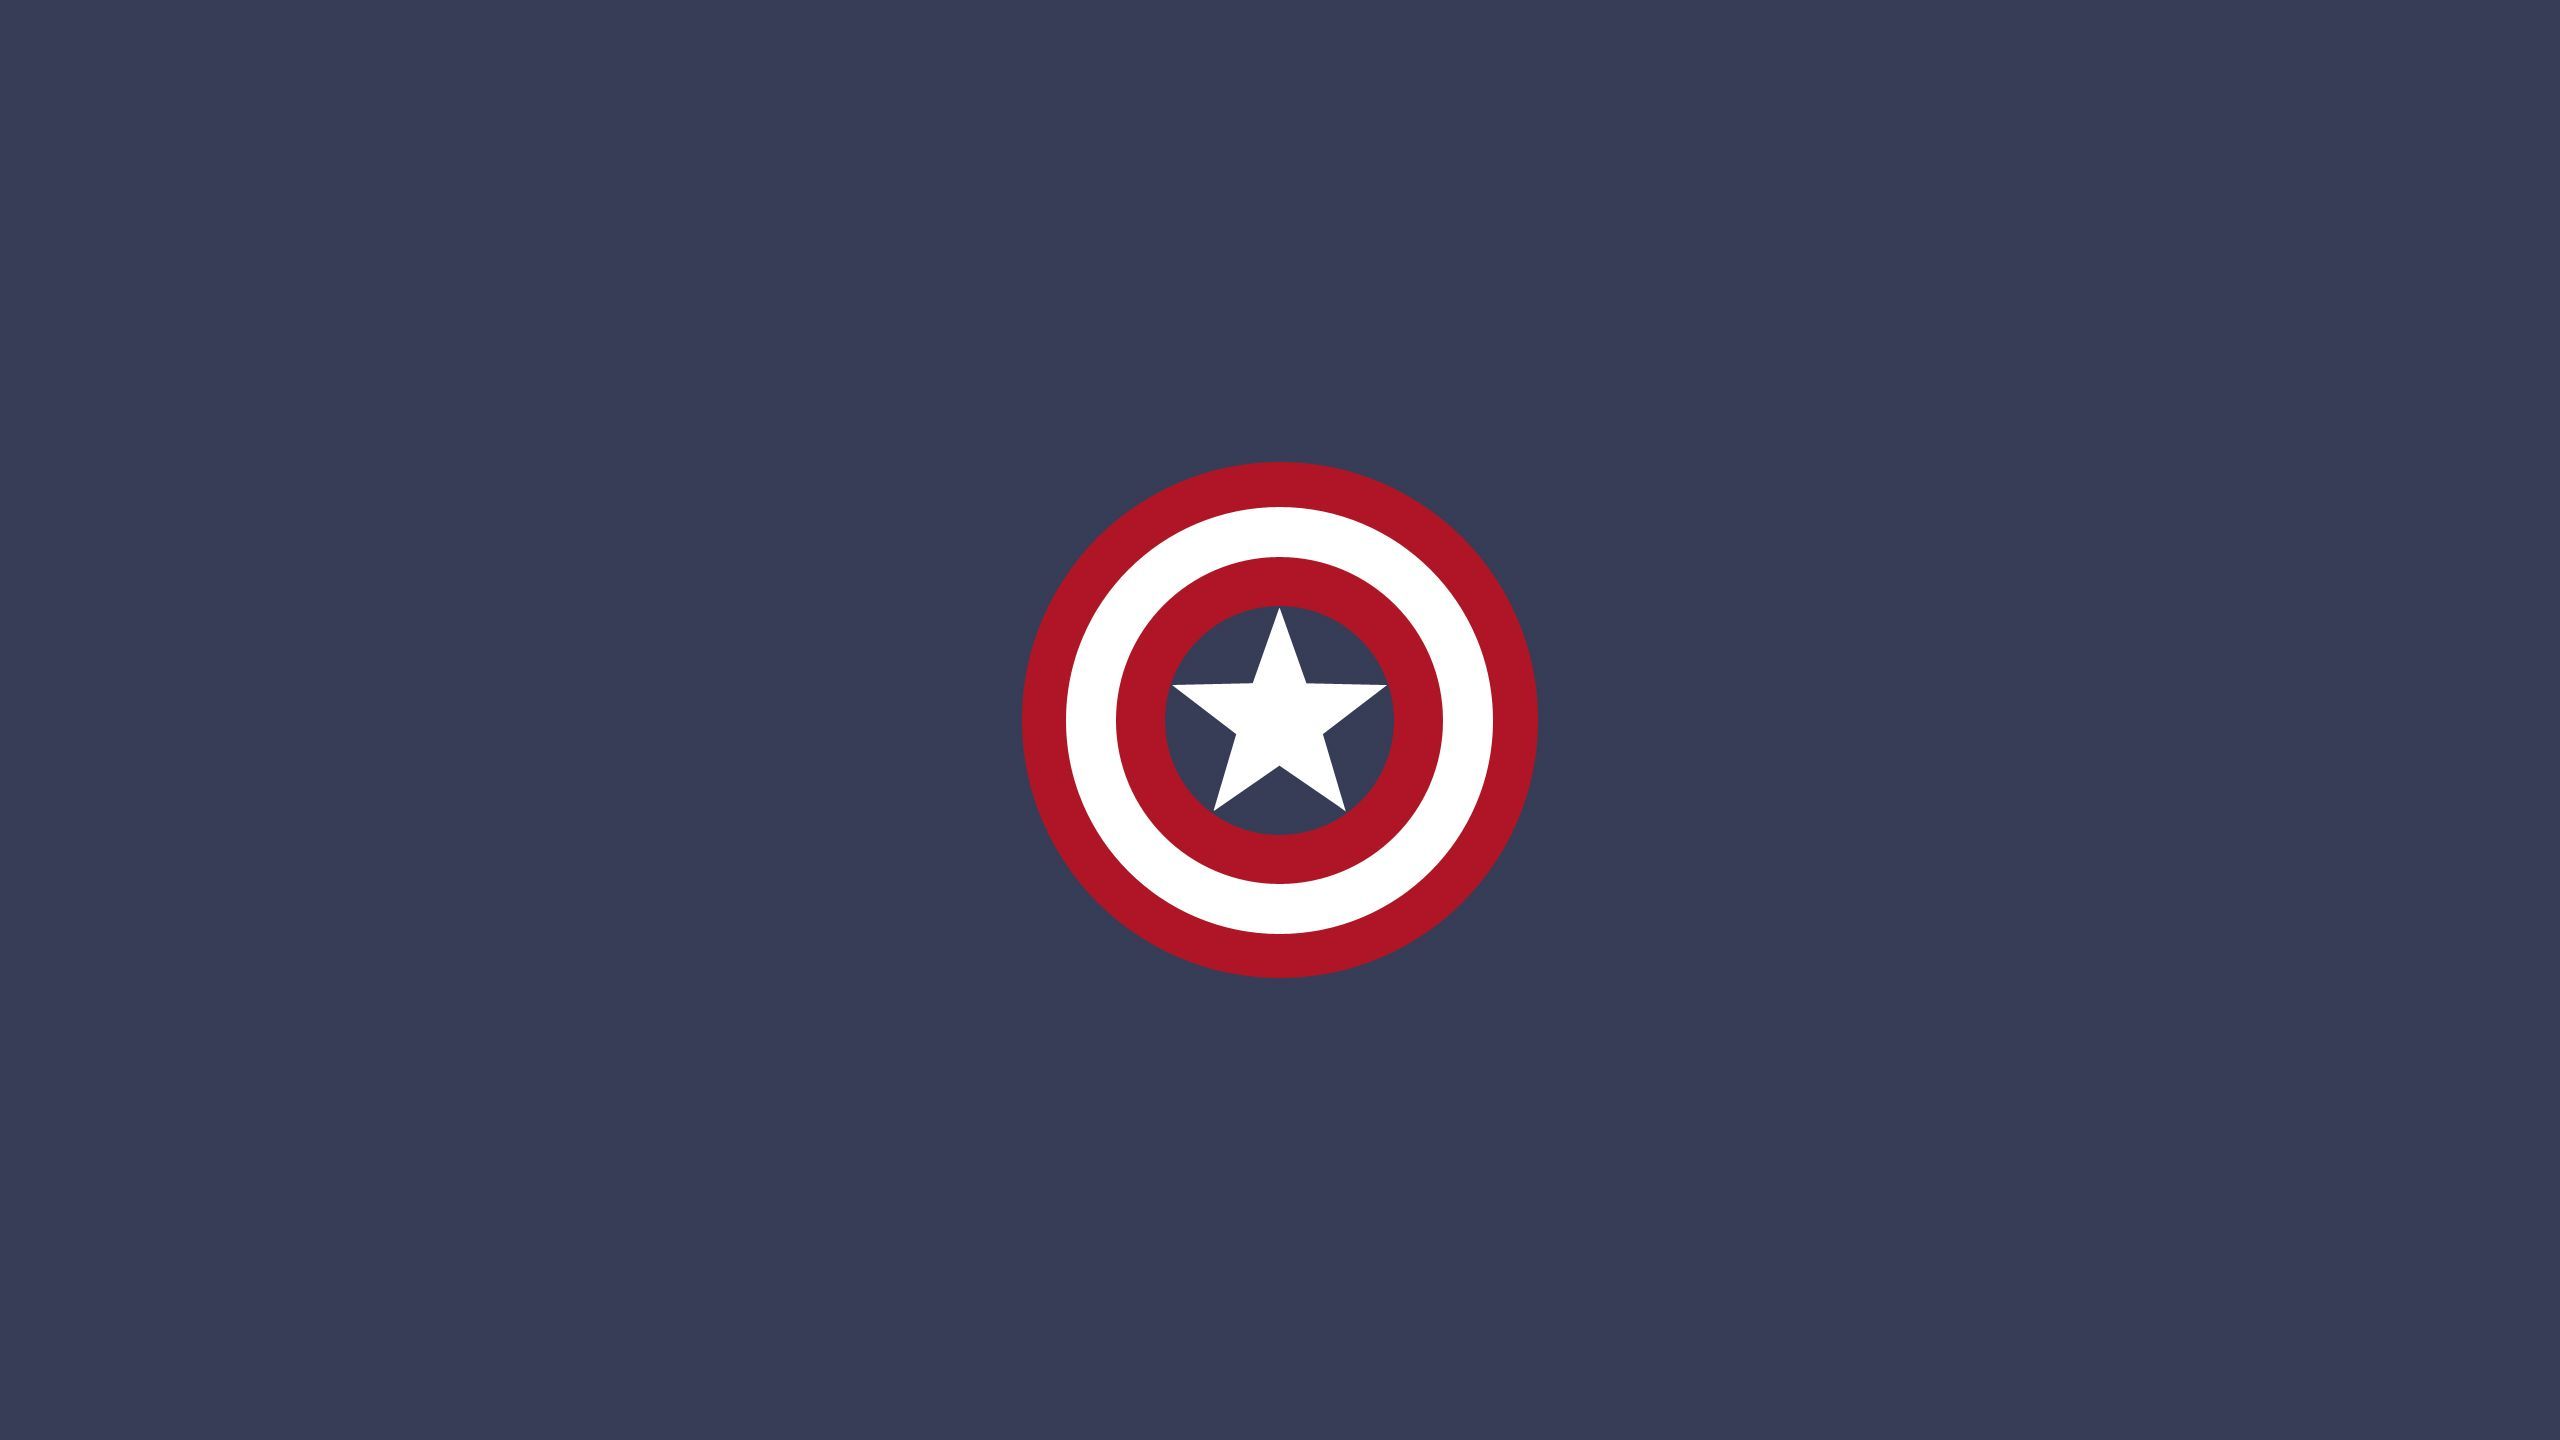 Captain America shield wallpaper 19334 2560x1440